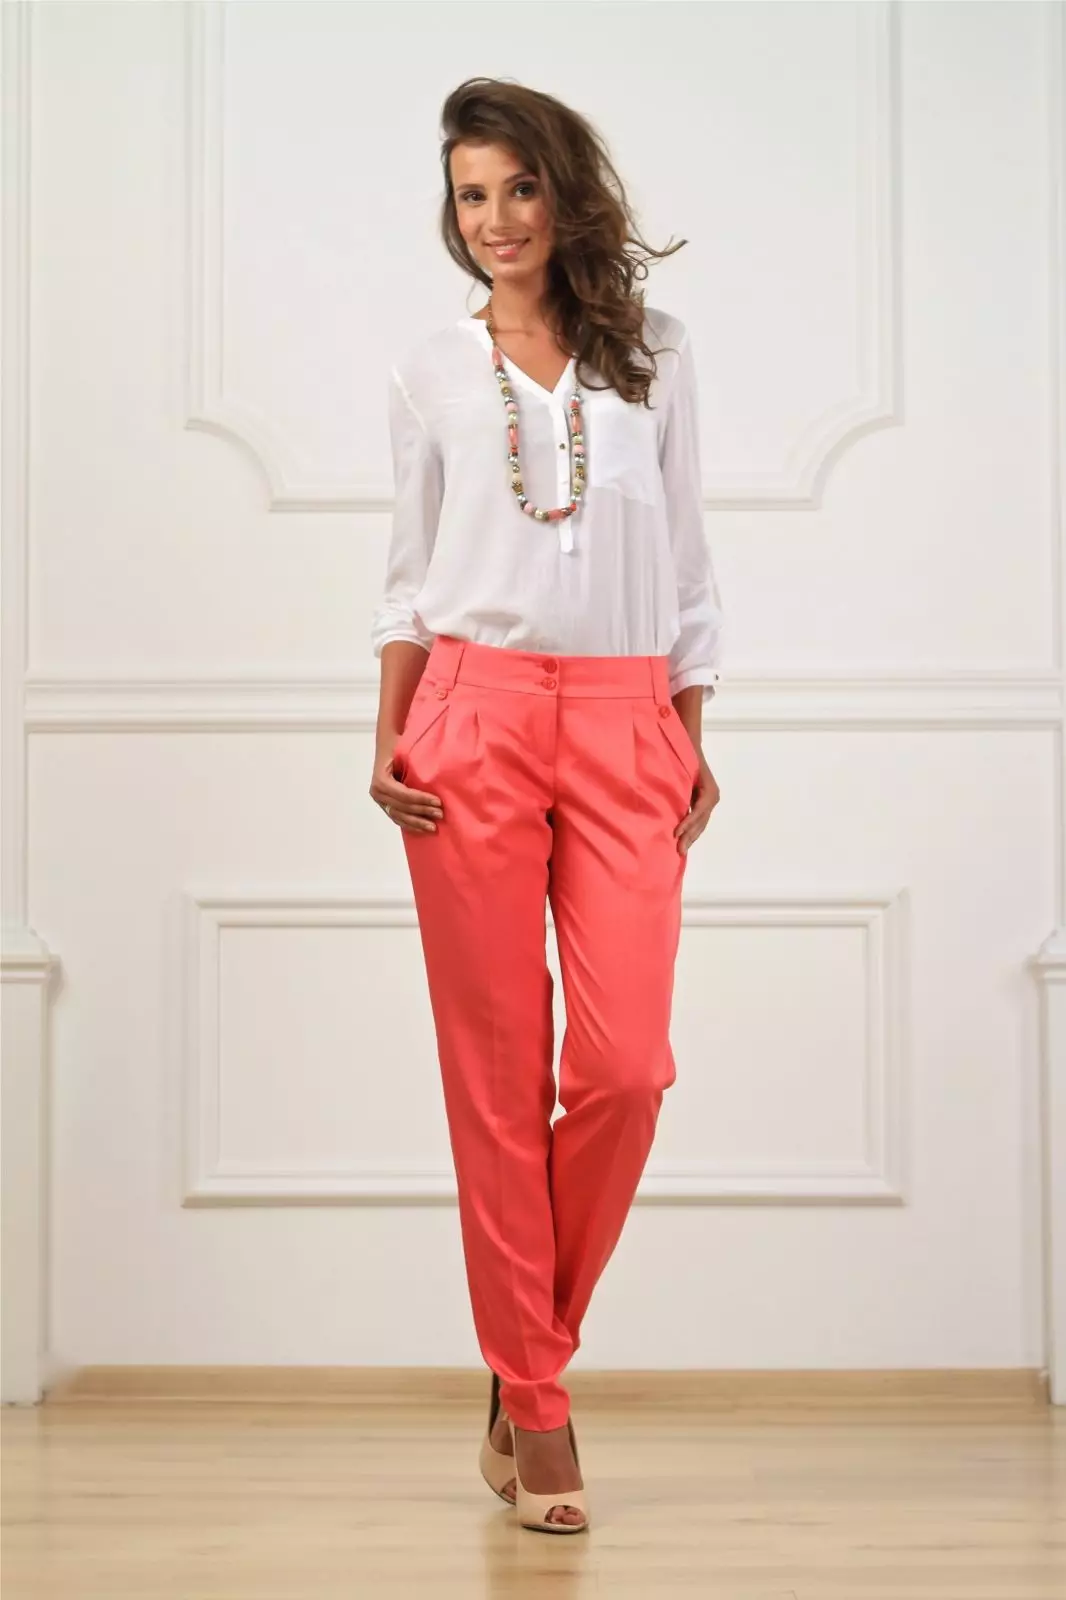 Pantalon Fashion 2021: Modèl élégance Fi a, Fashion Tandans 917_43